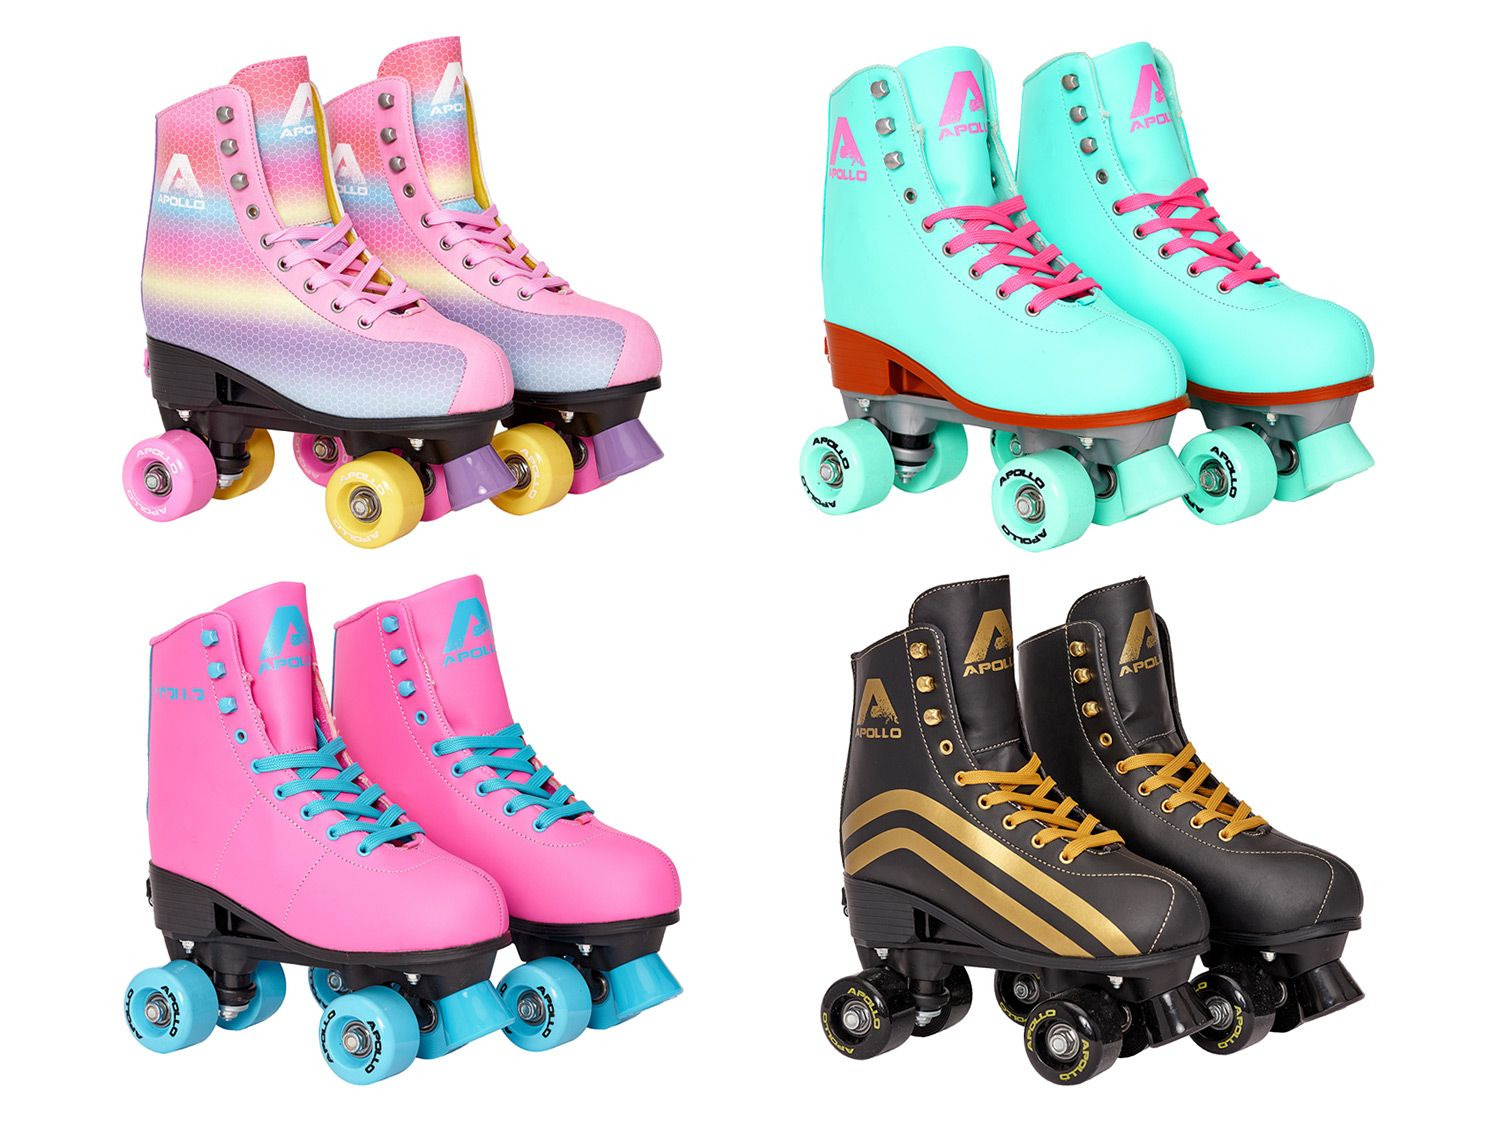 Rollschuhe für Kinder Roller Skates für Anfänger Größenverstellbare Größe31-38 